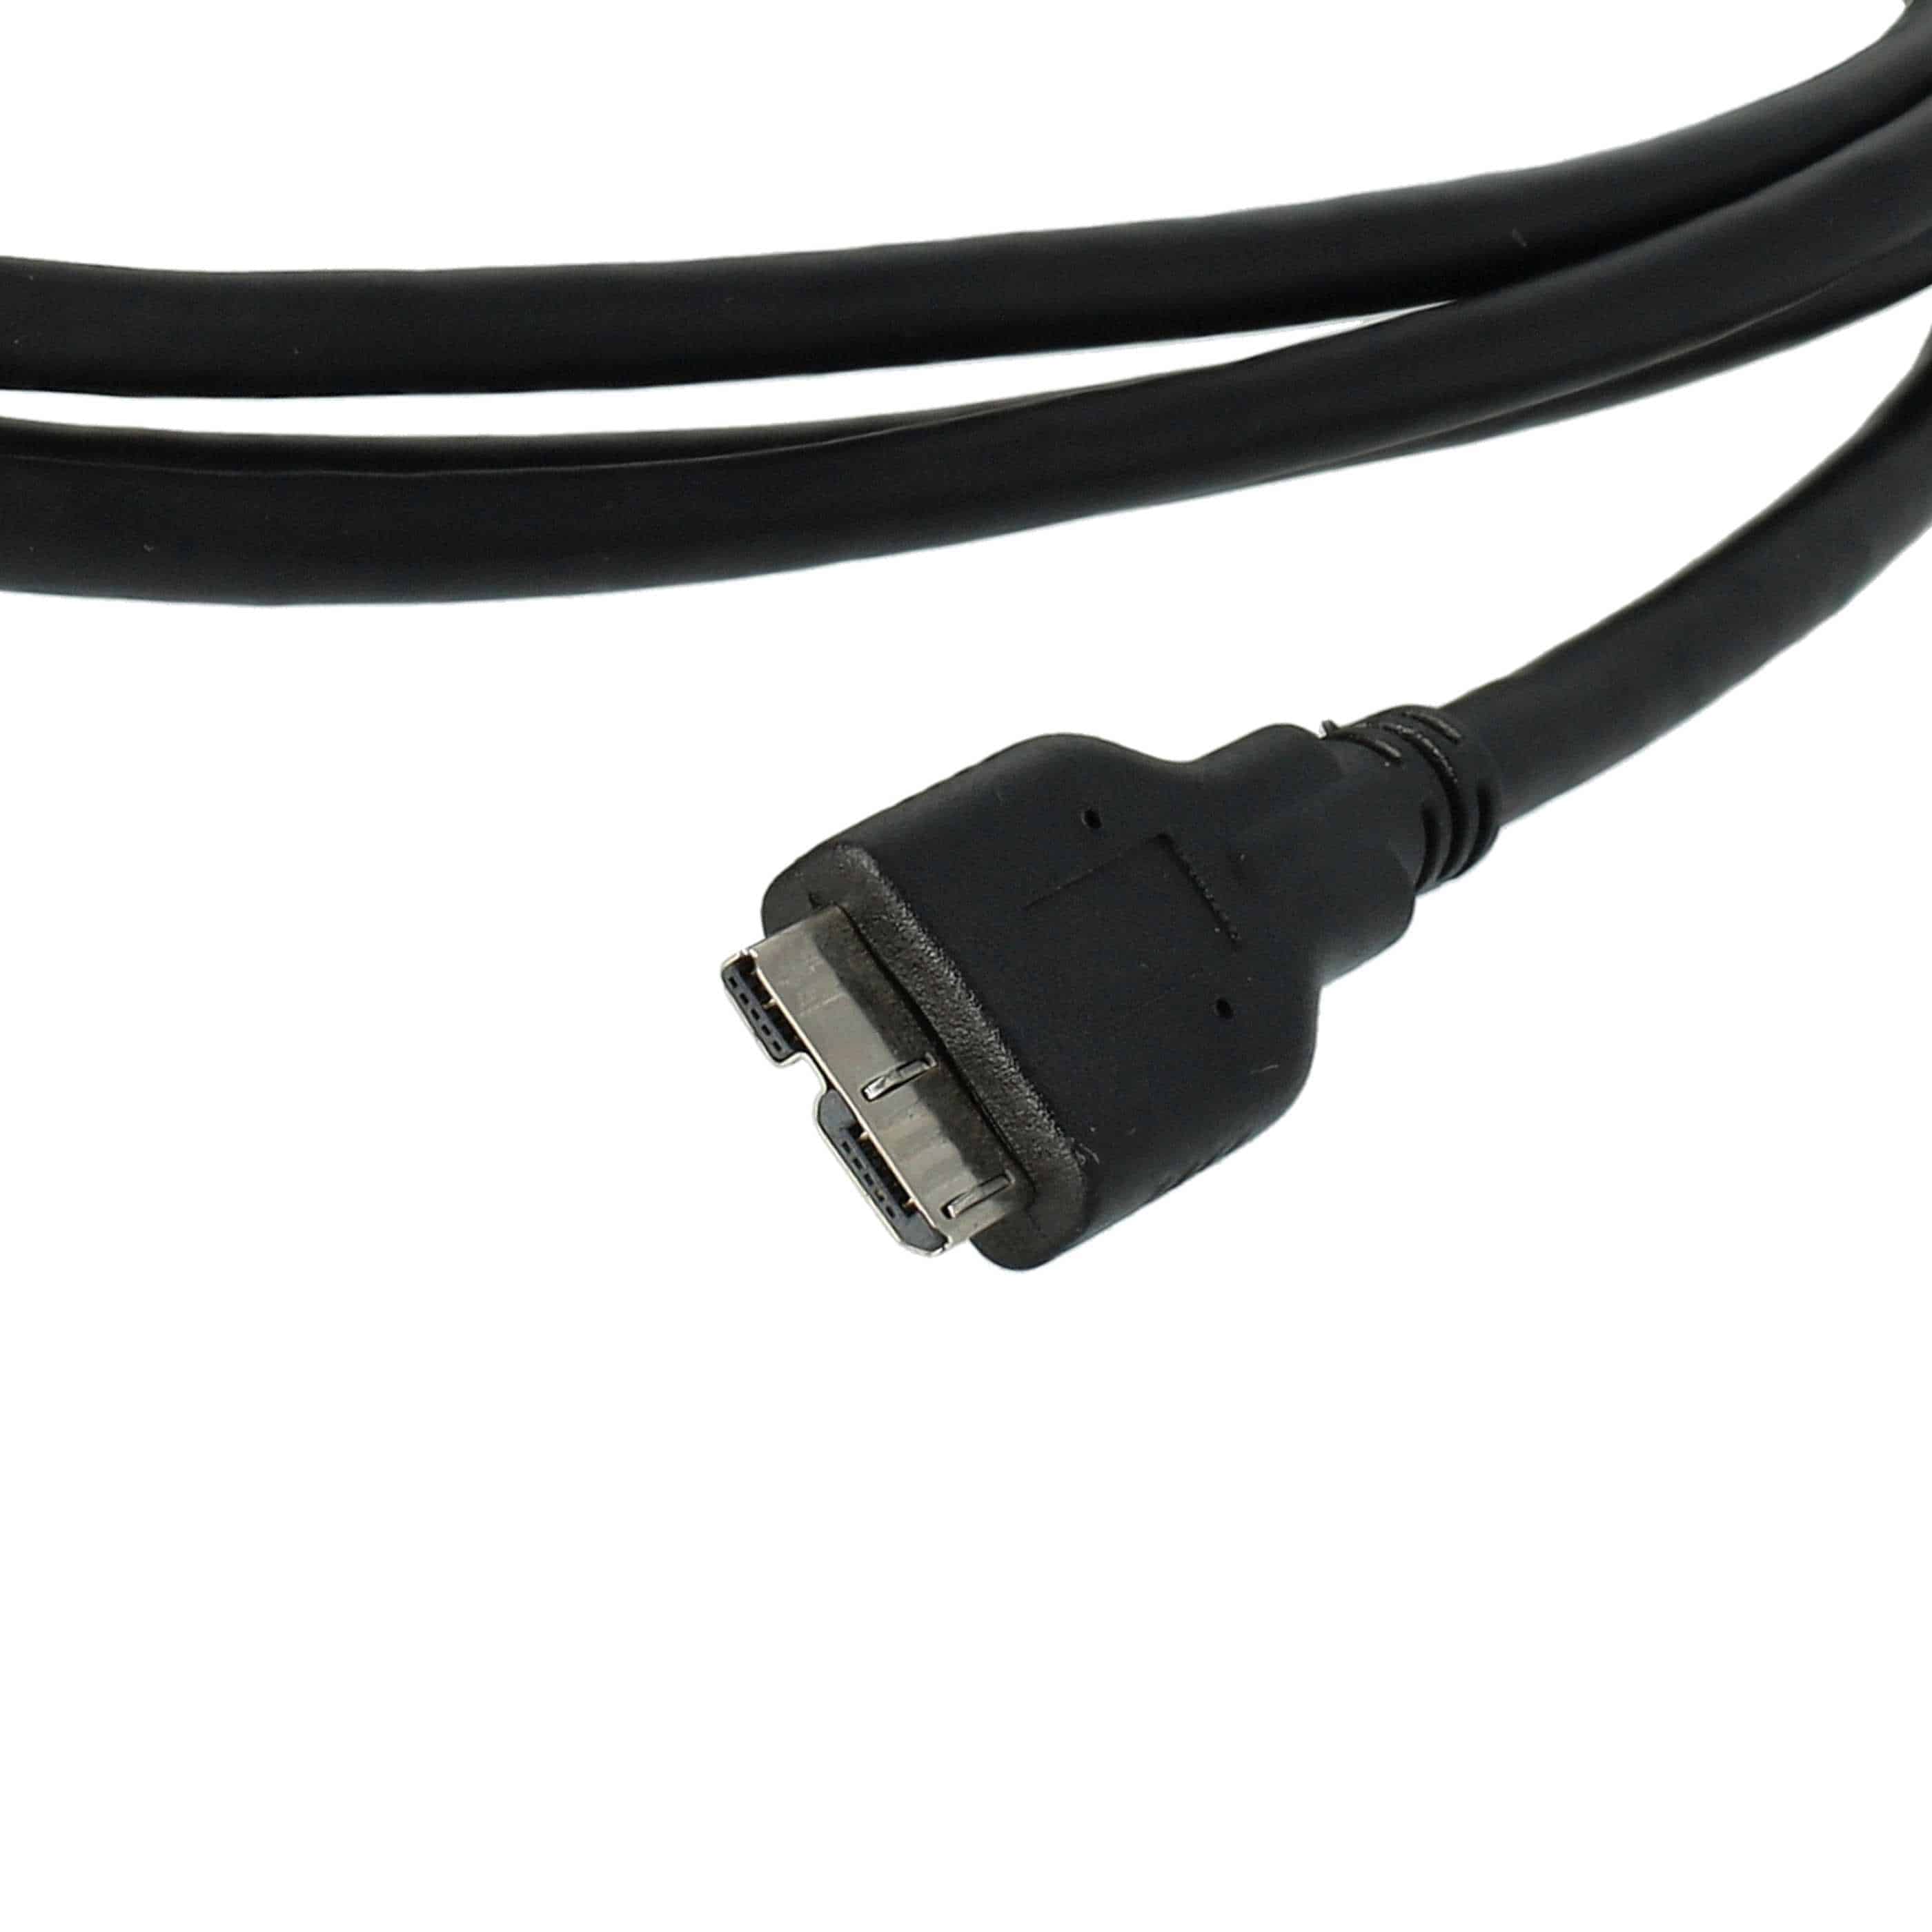 USB Datenkabel als Ersatz für Nikon UC-E14, UC-E22 für Kamera - 150 cm